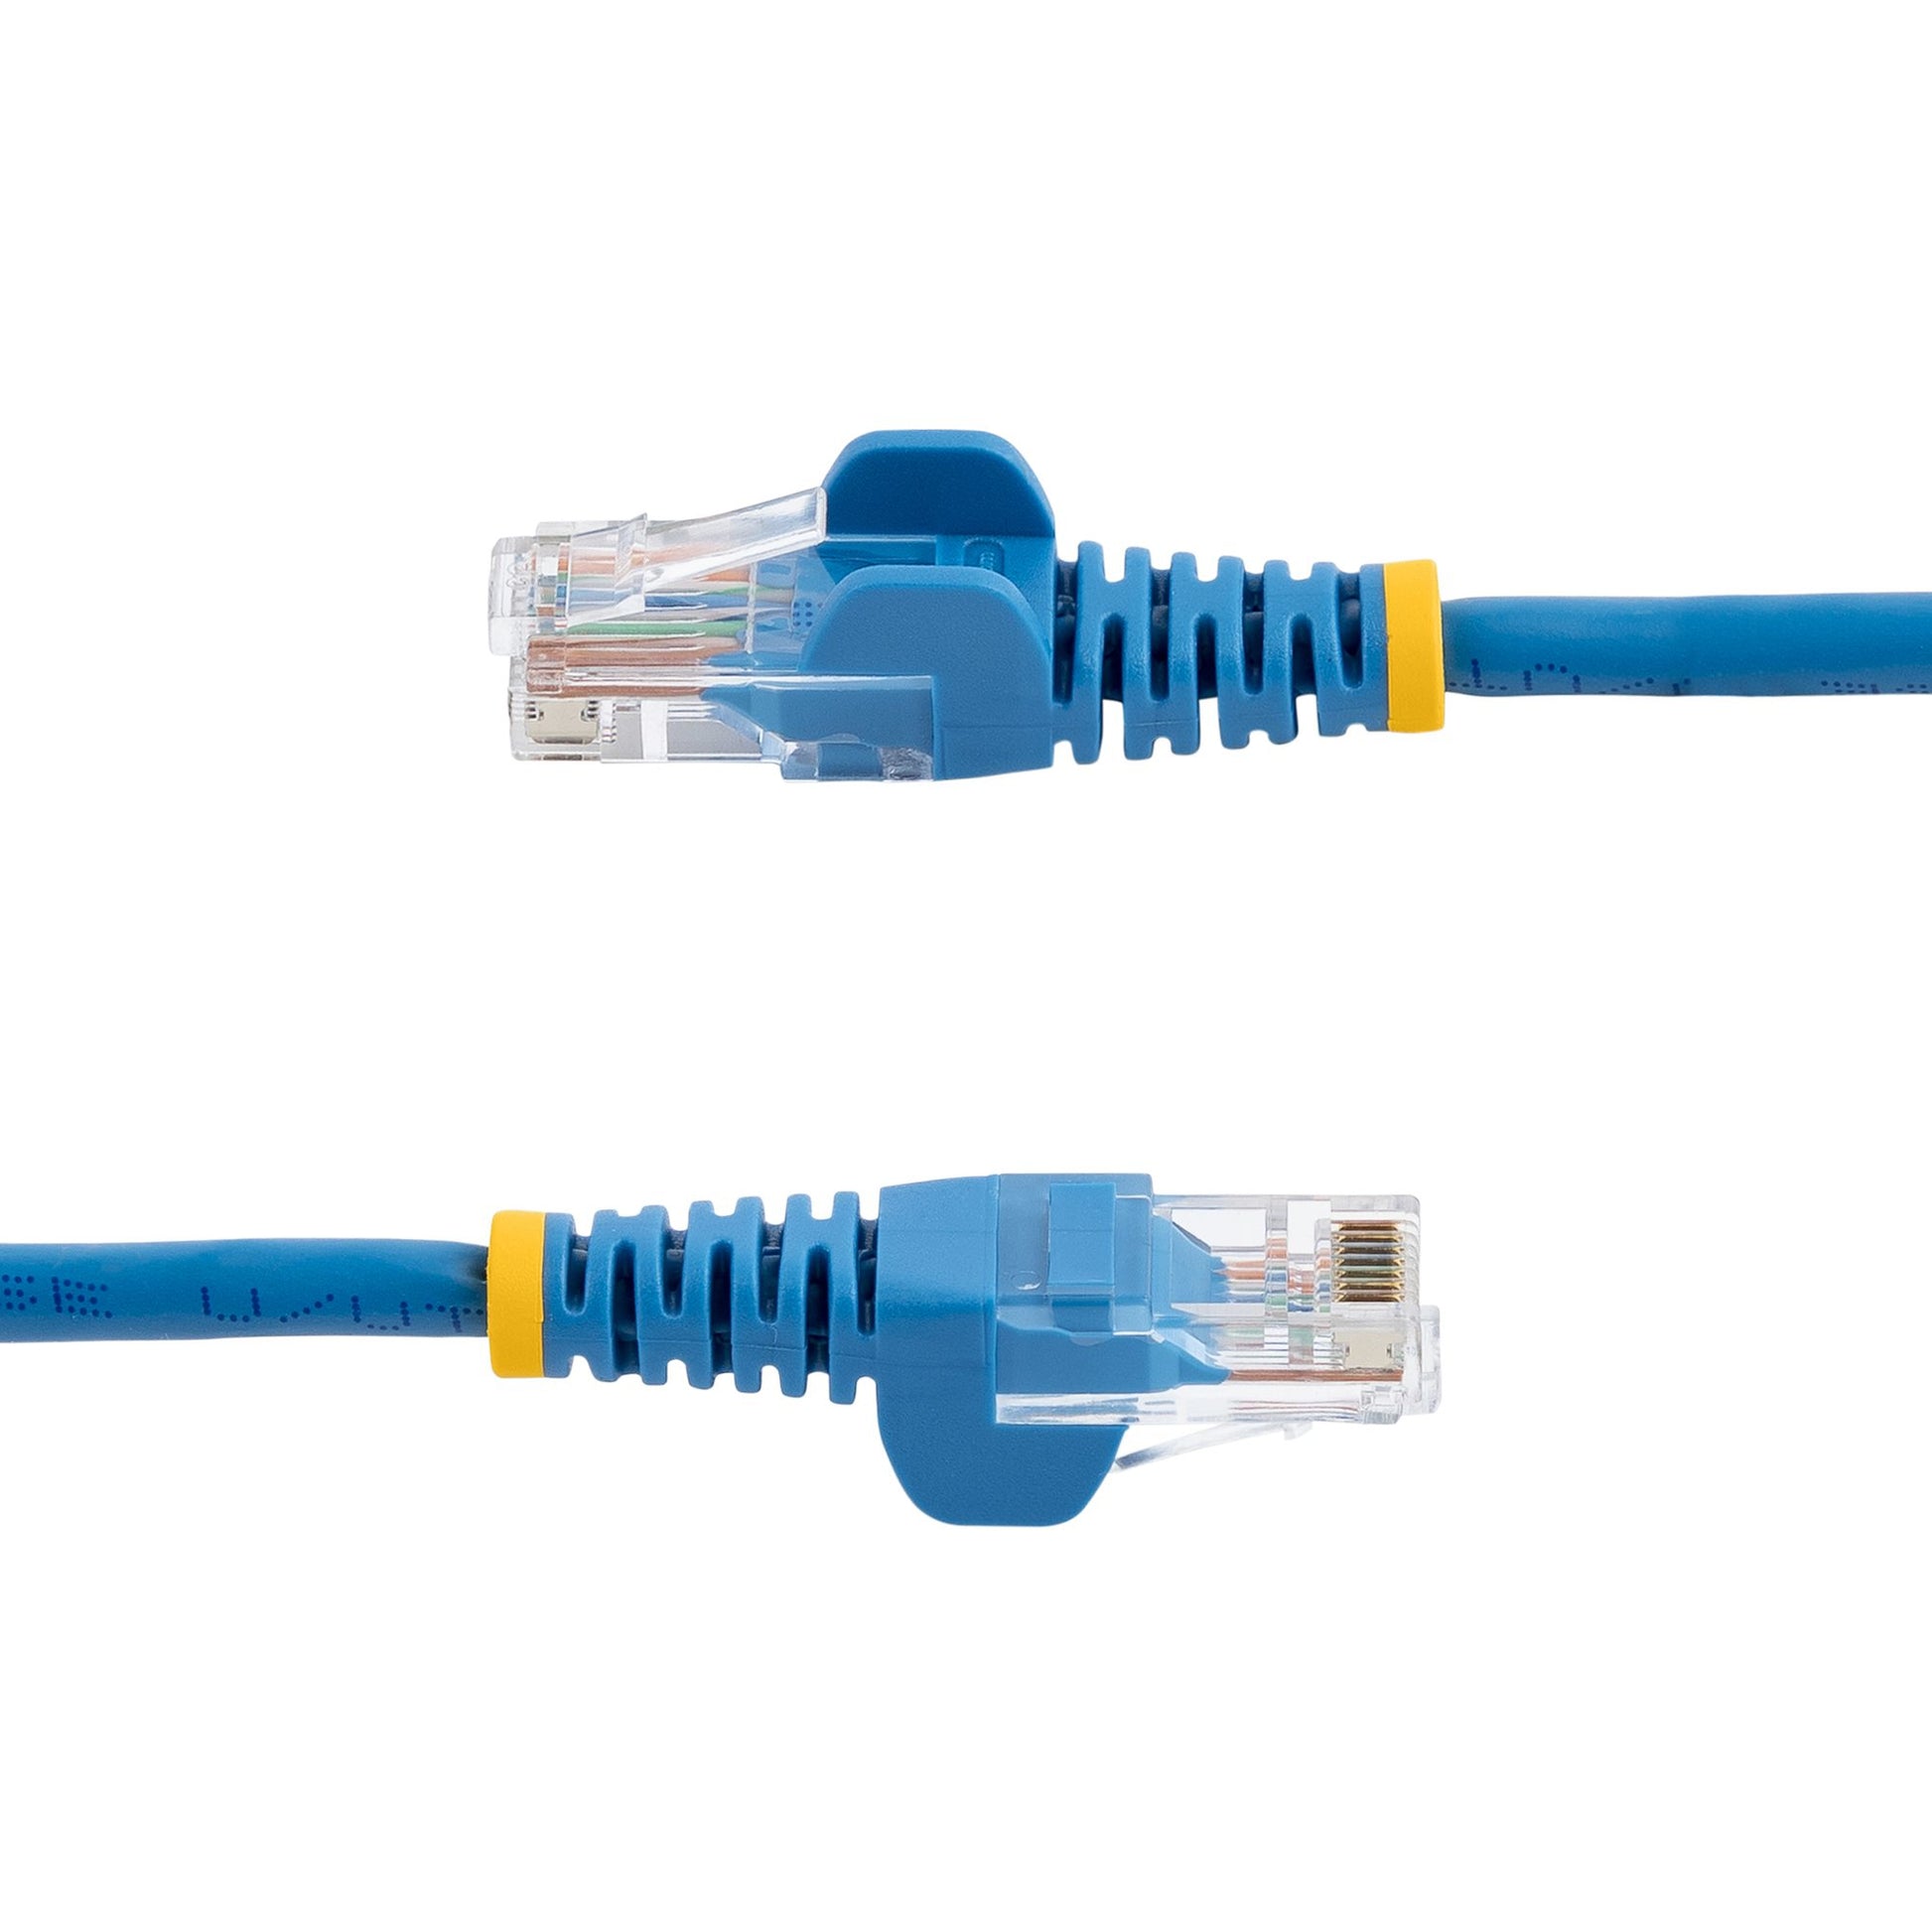 StarTech.com Cat5e Ethernet Patch Cable with Snagless RJ45 Connectors - 10 m, Blue-2